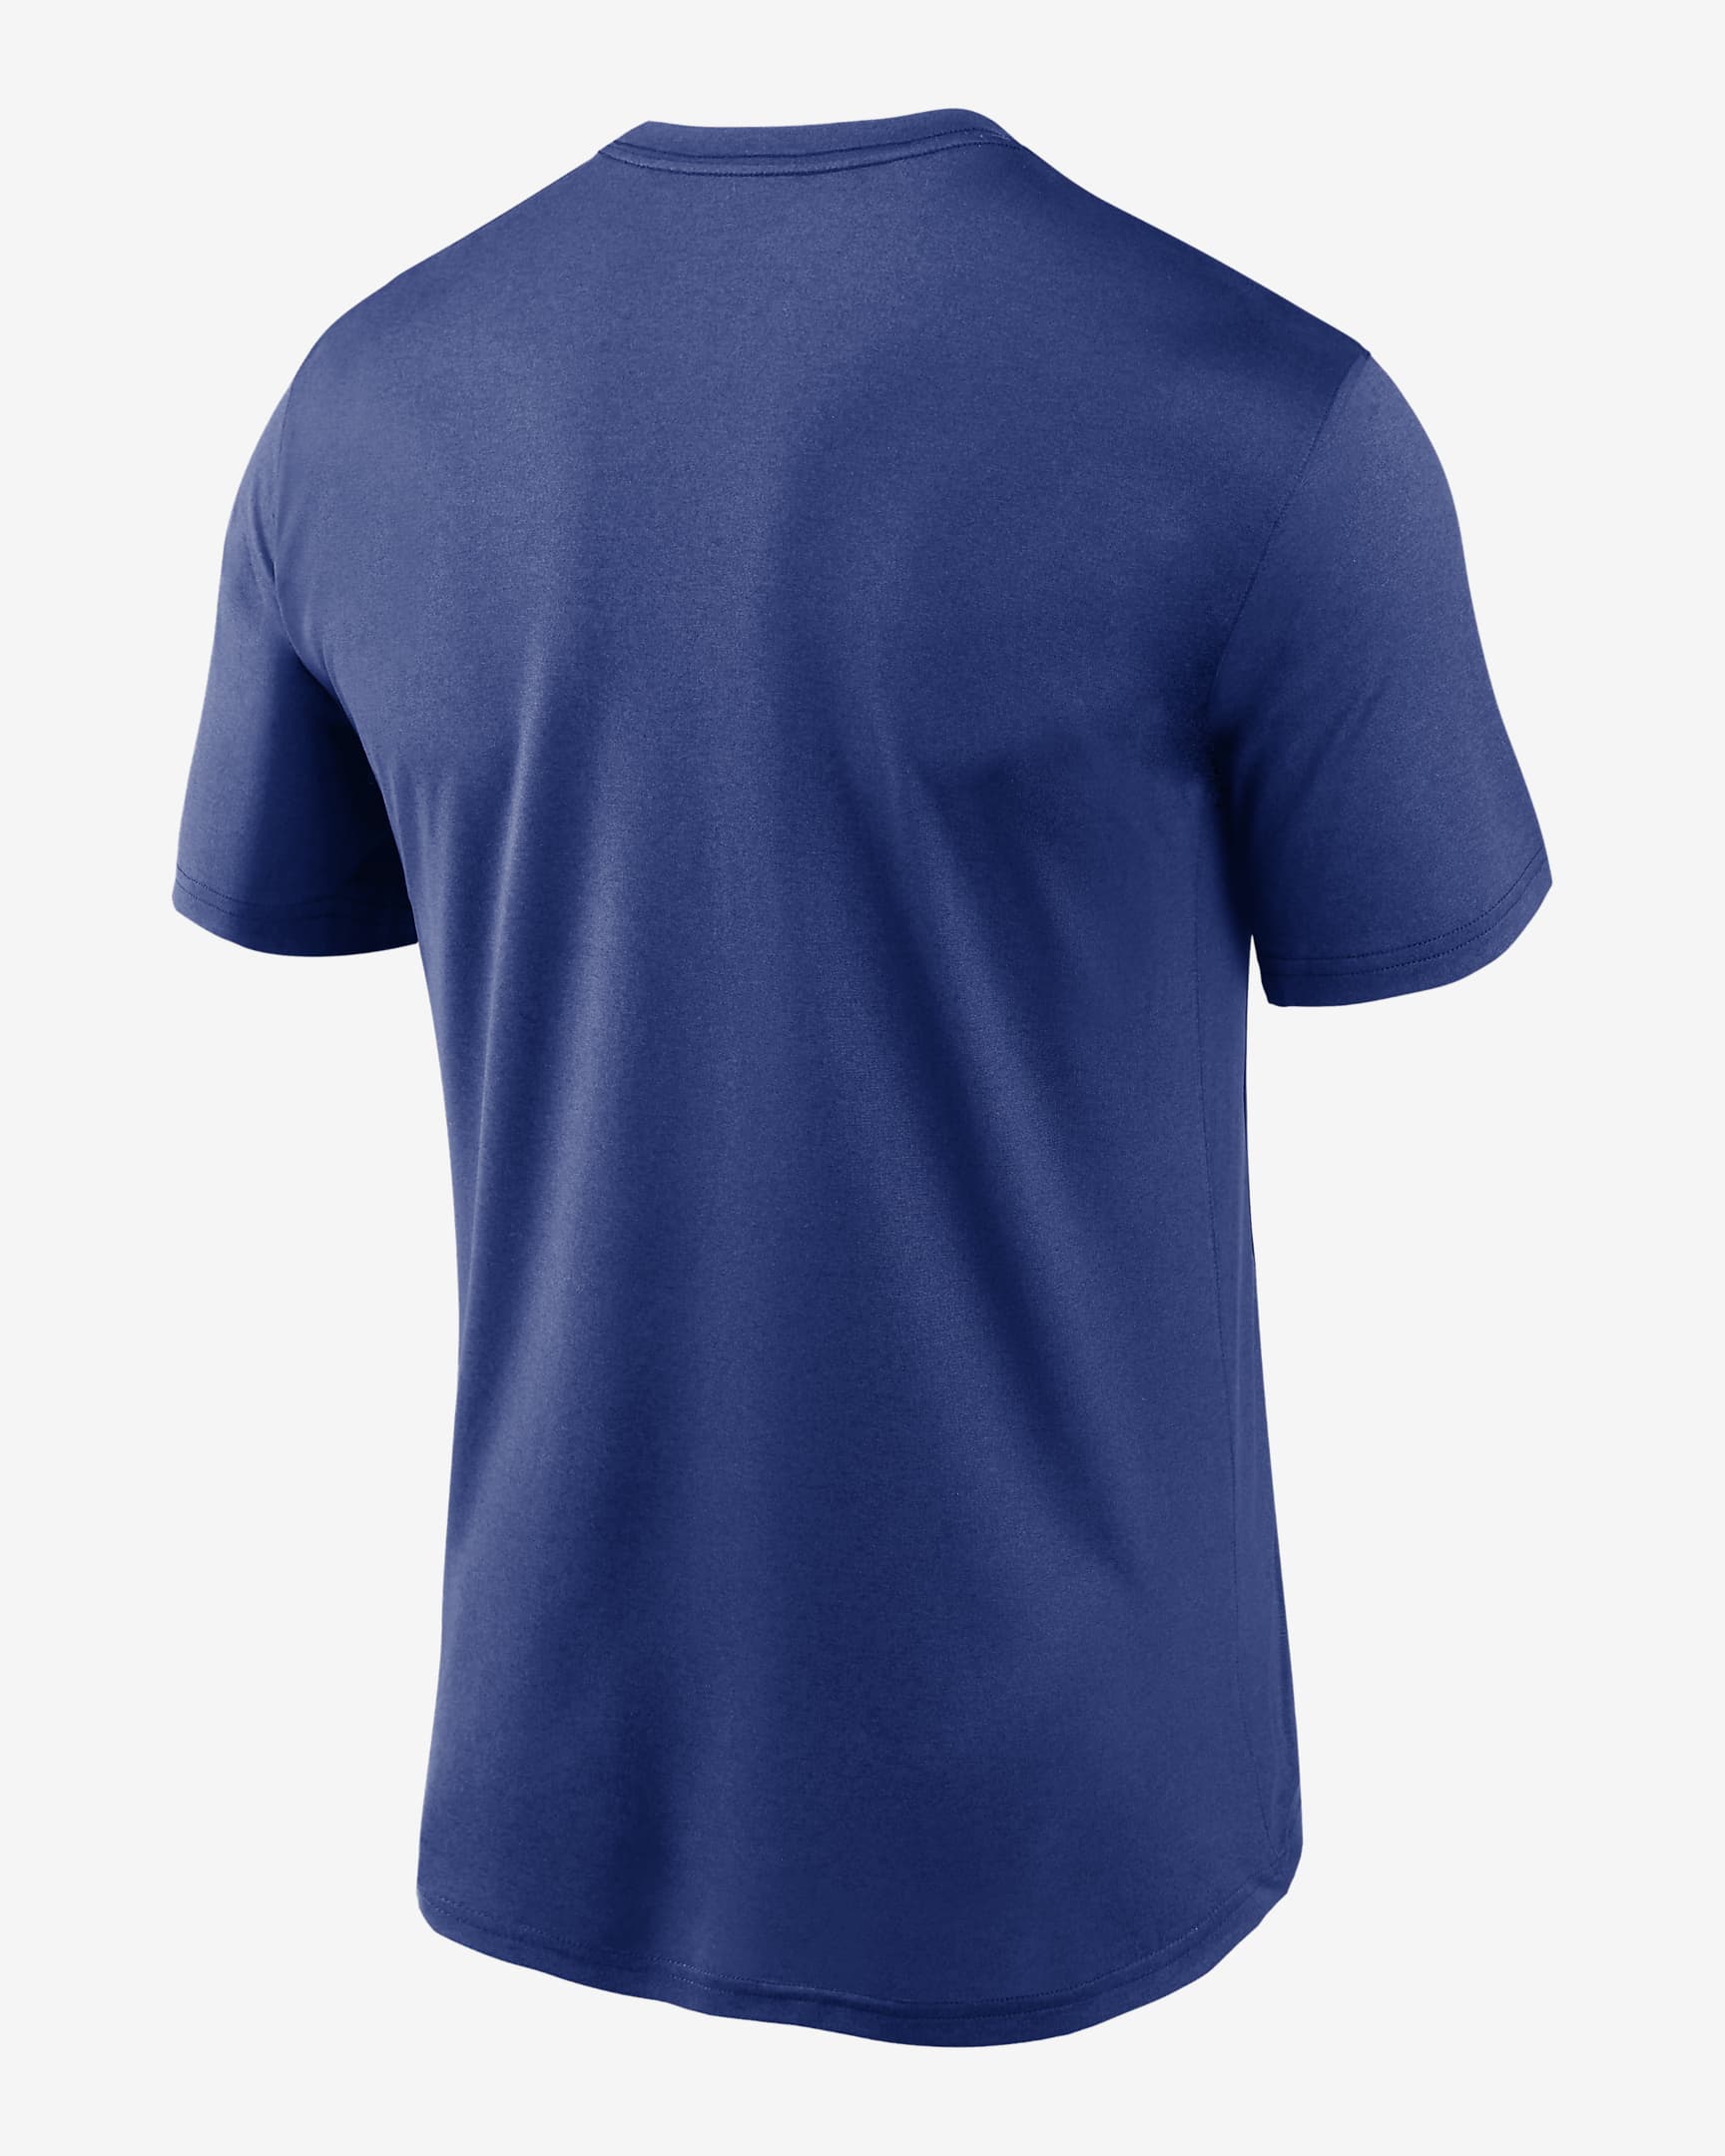 Nike Dri-FIT Logo Legend (MLB Toronto Blue Jays) Men's T-Shirt. Nike.com